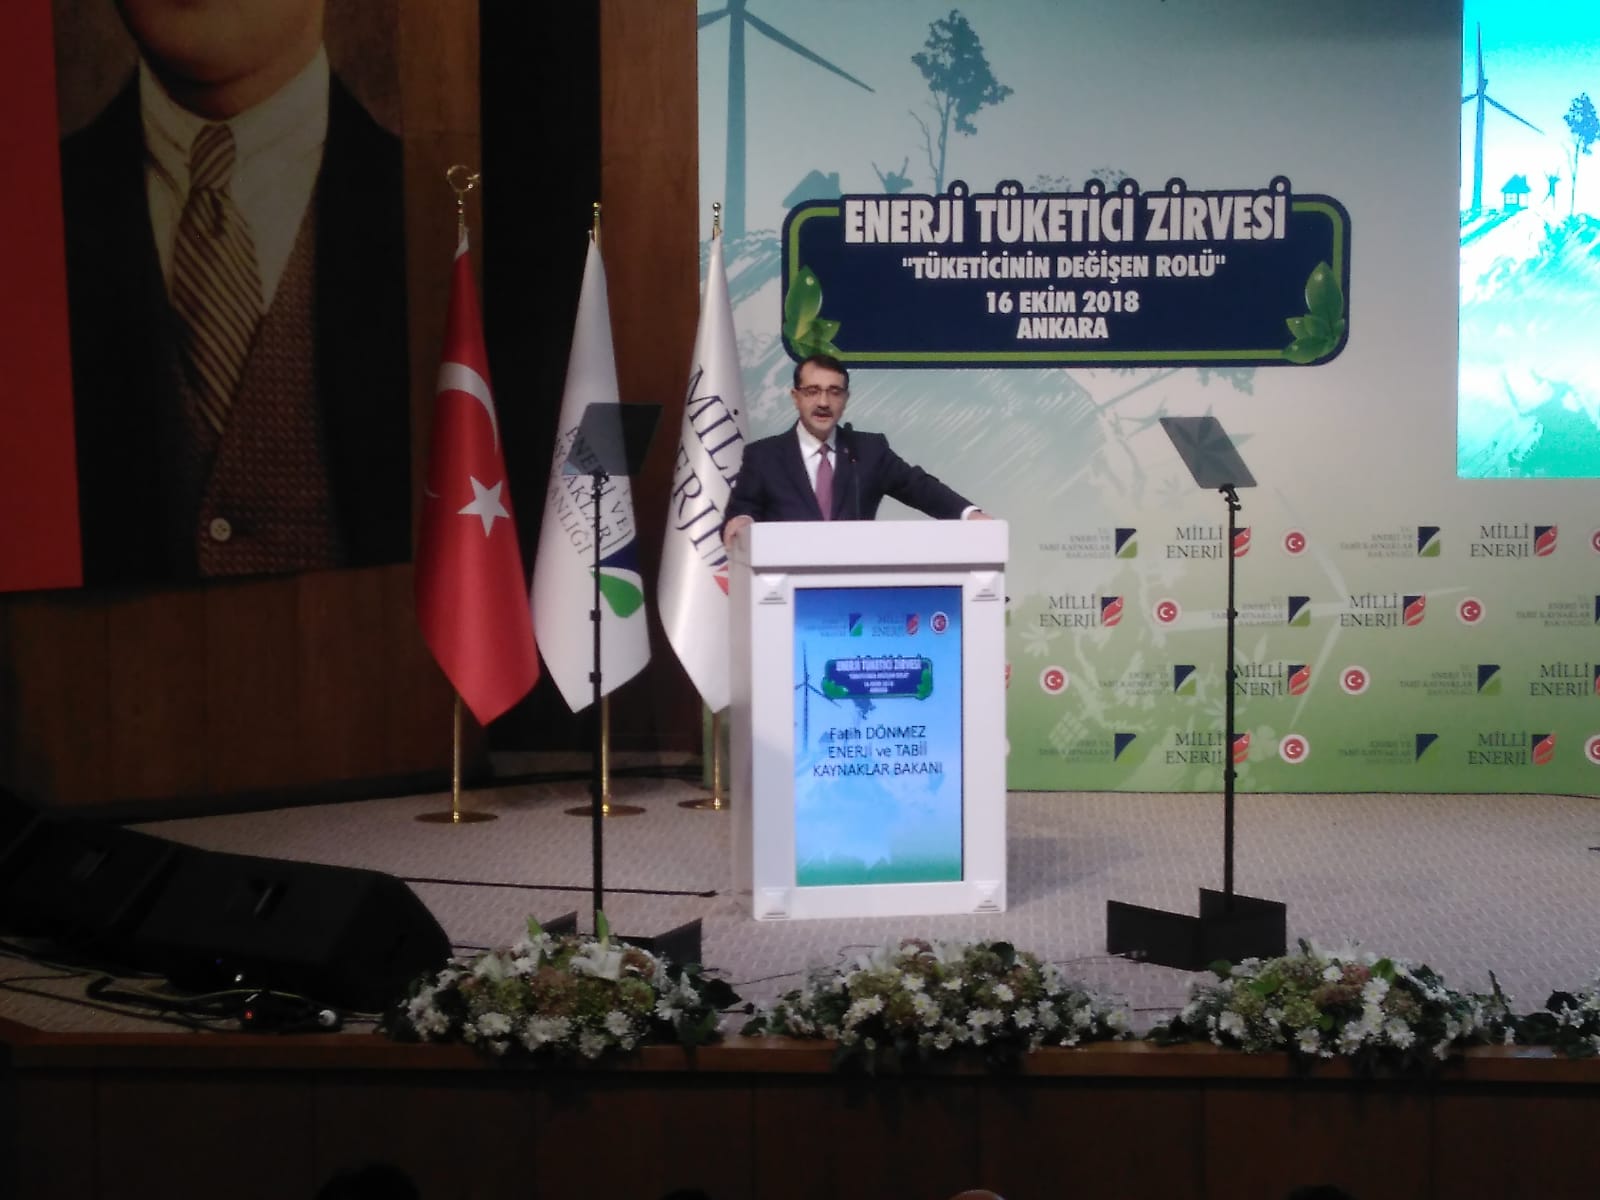 “Değişen ve büyüyen Türkiye’de tüketicinin rolünü tekrar tanımlamalıyız”